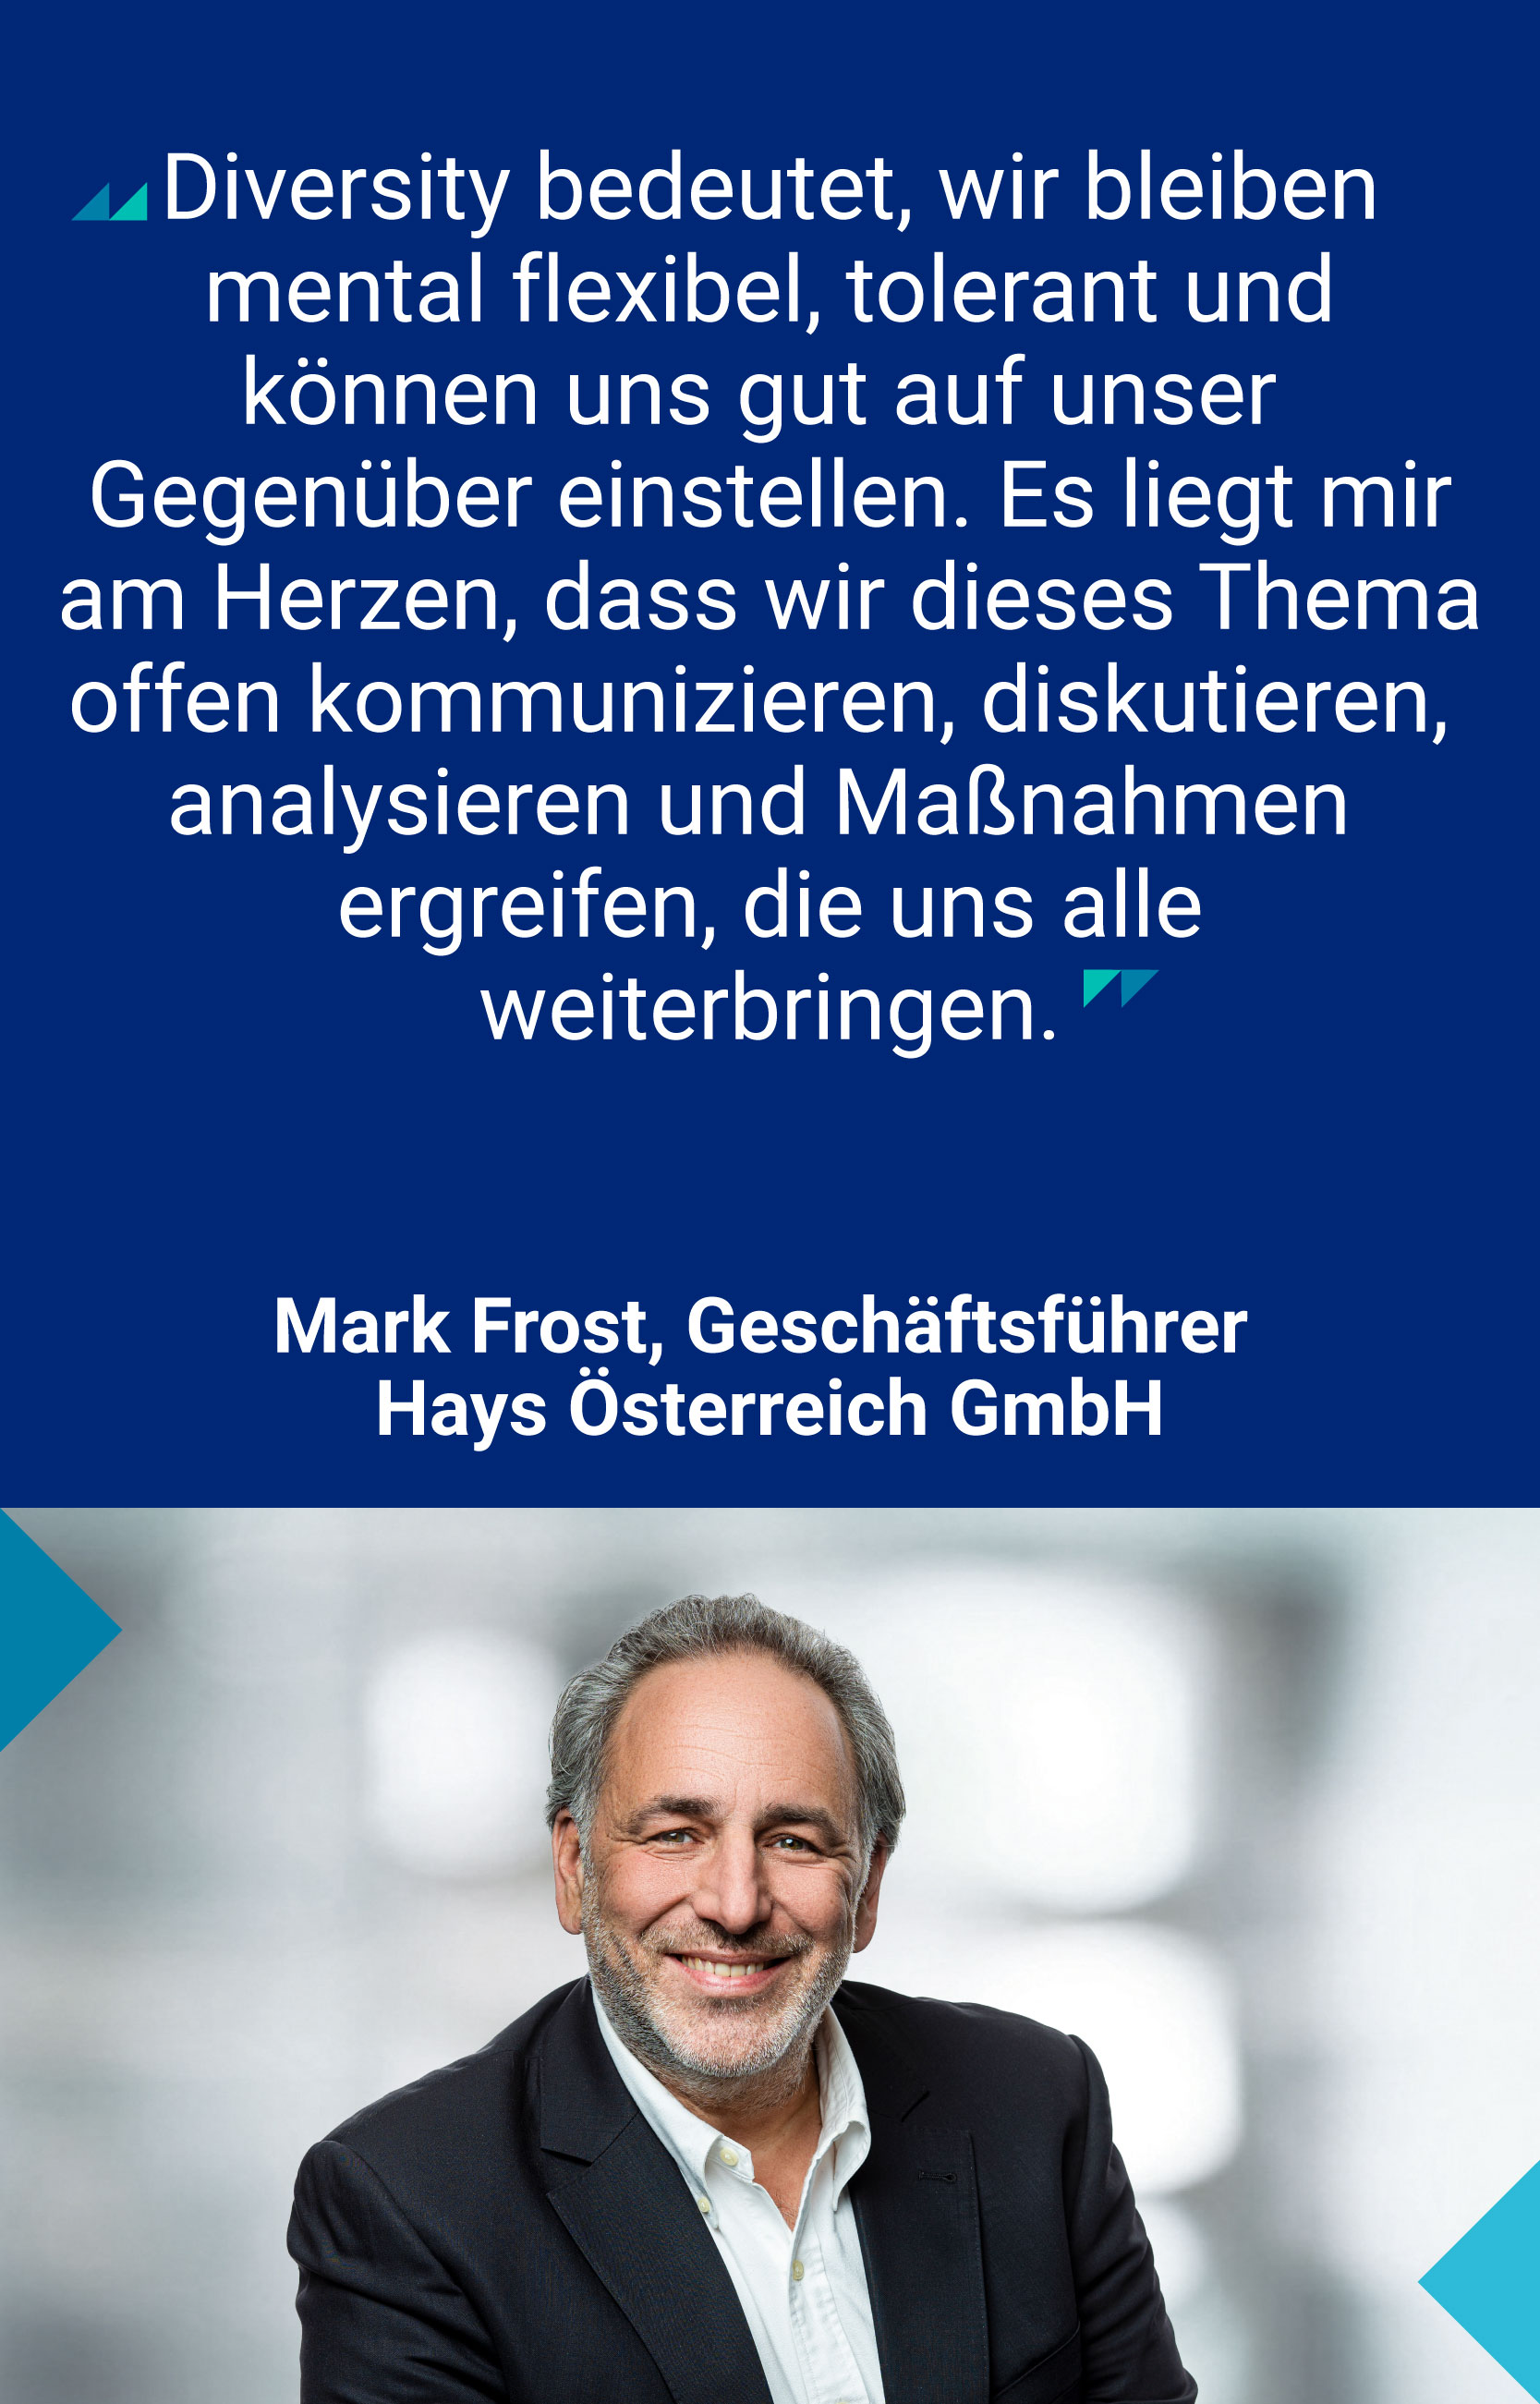 Mark Frost, Geschäftsführer Hays Österreich GmbH